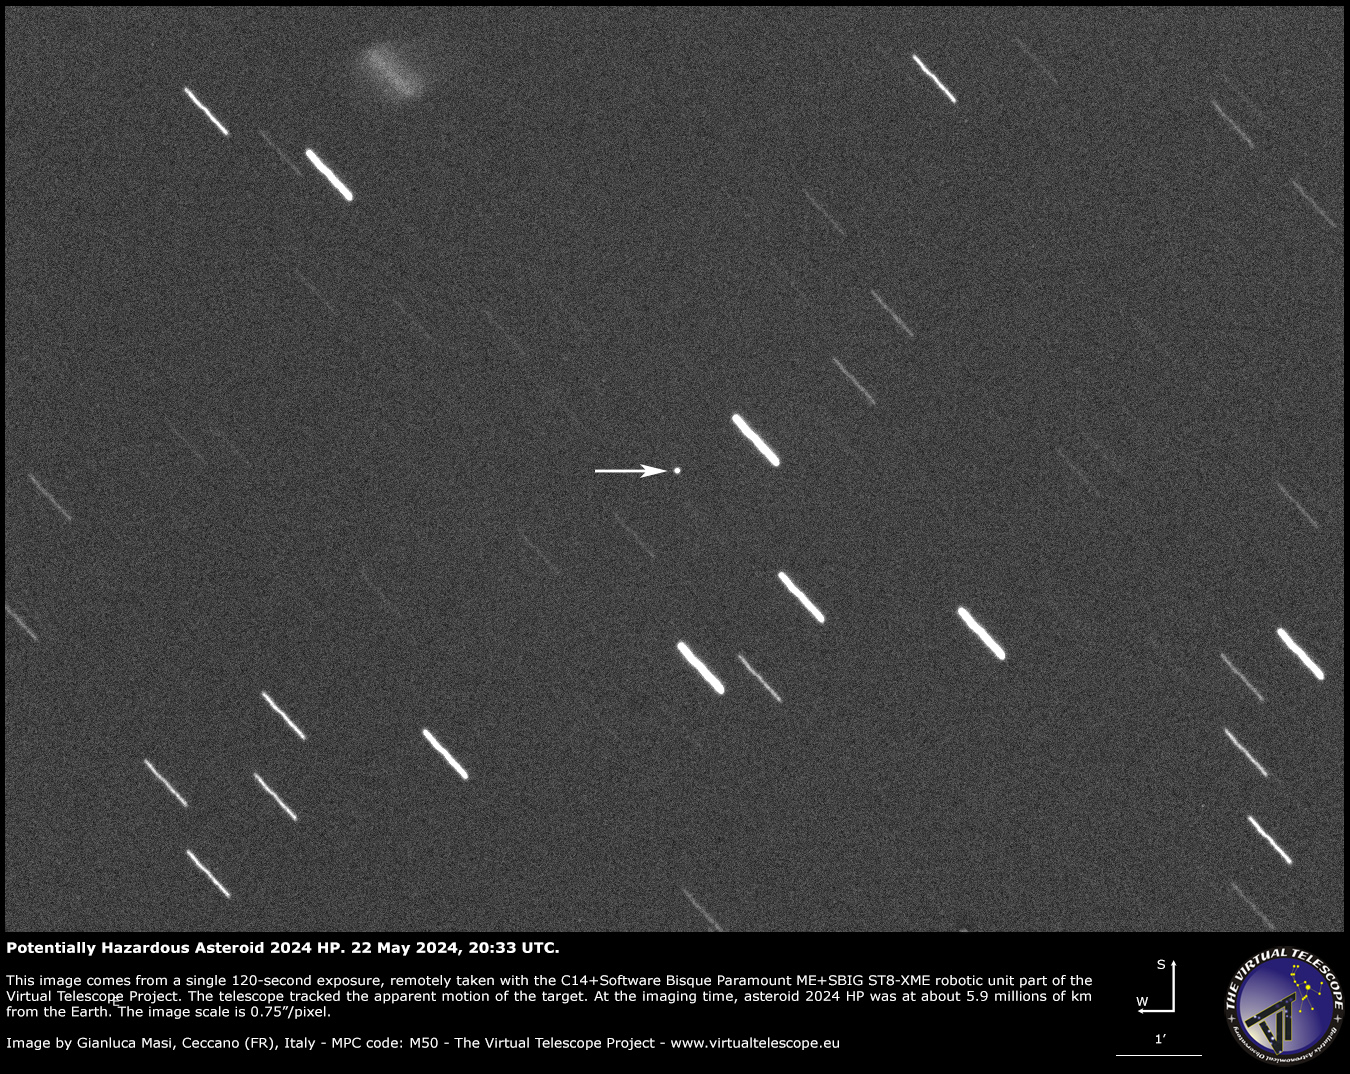 Potentially Hazardous Asteroid 2024 HP close encounter an image 22